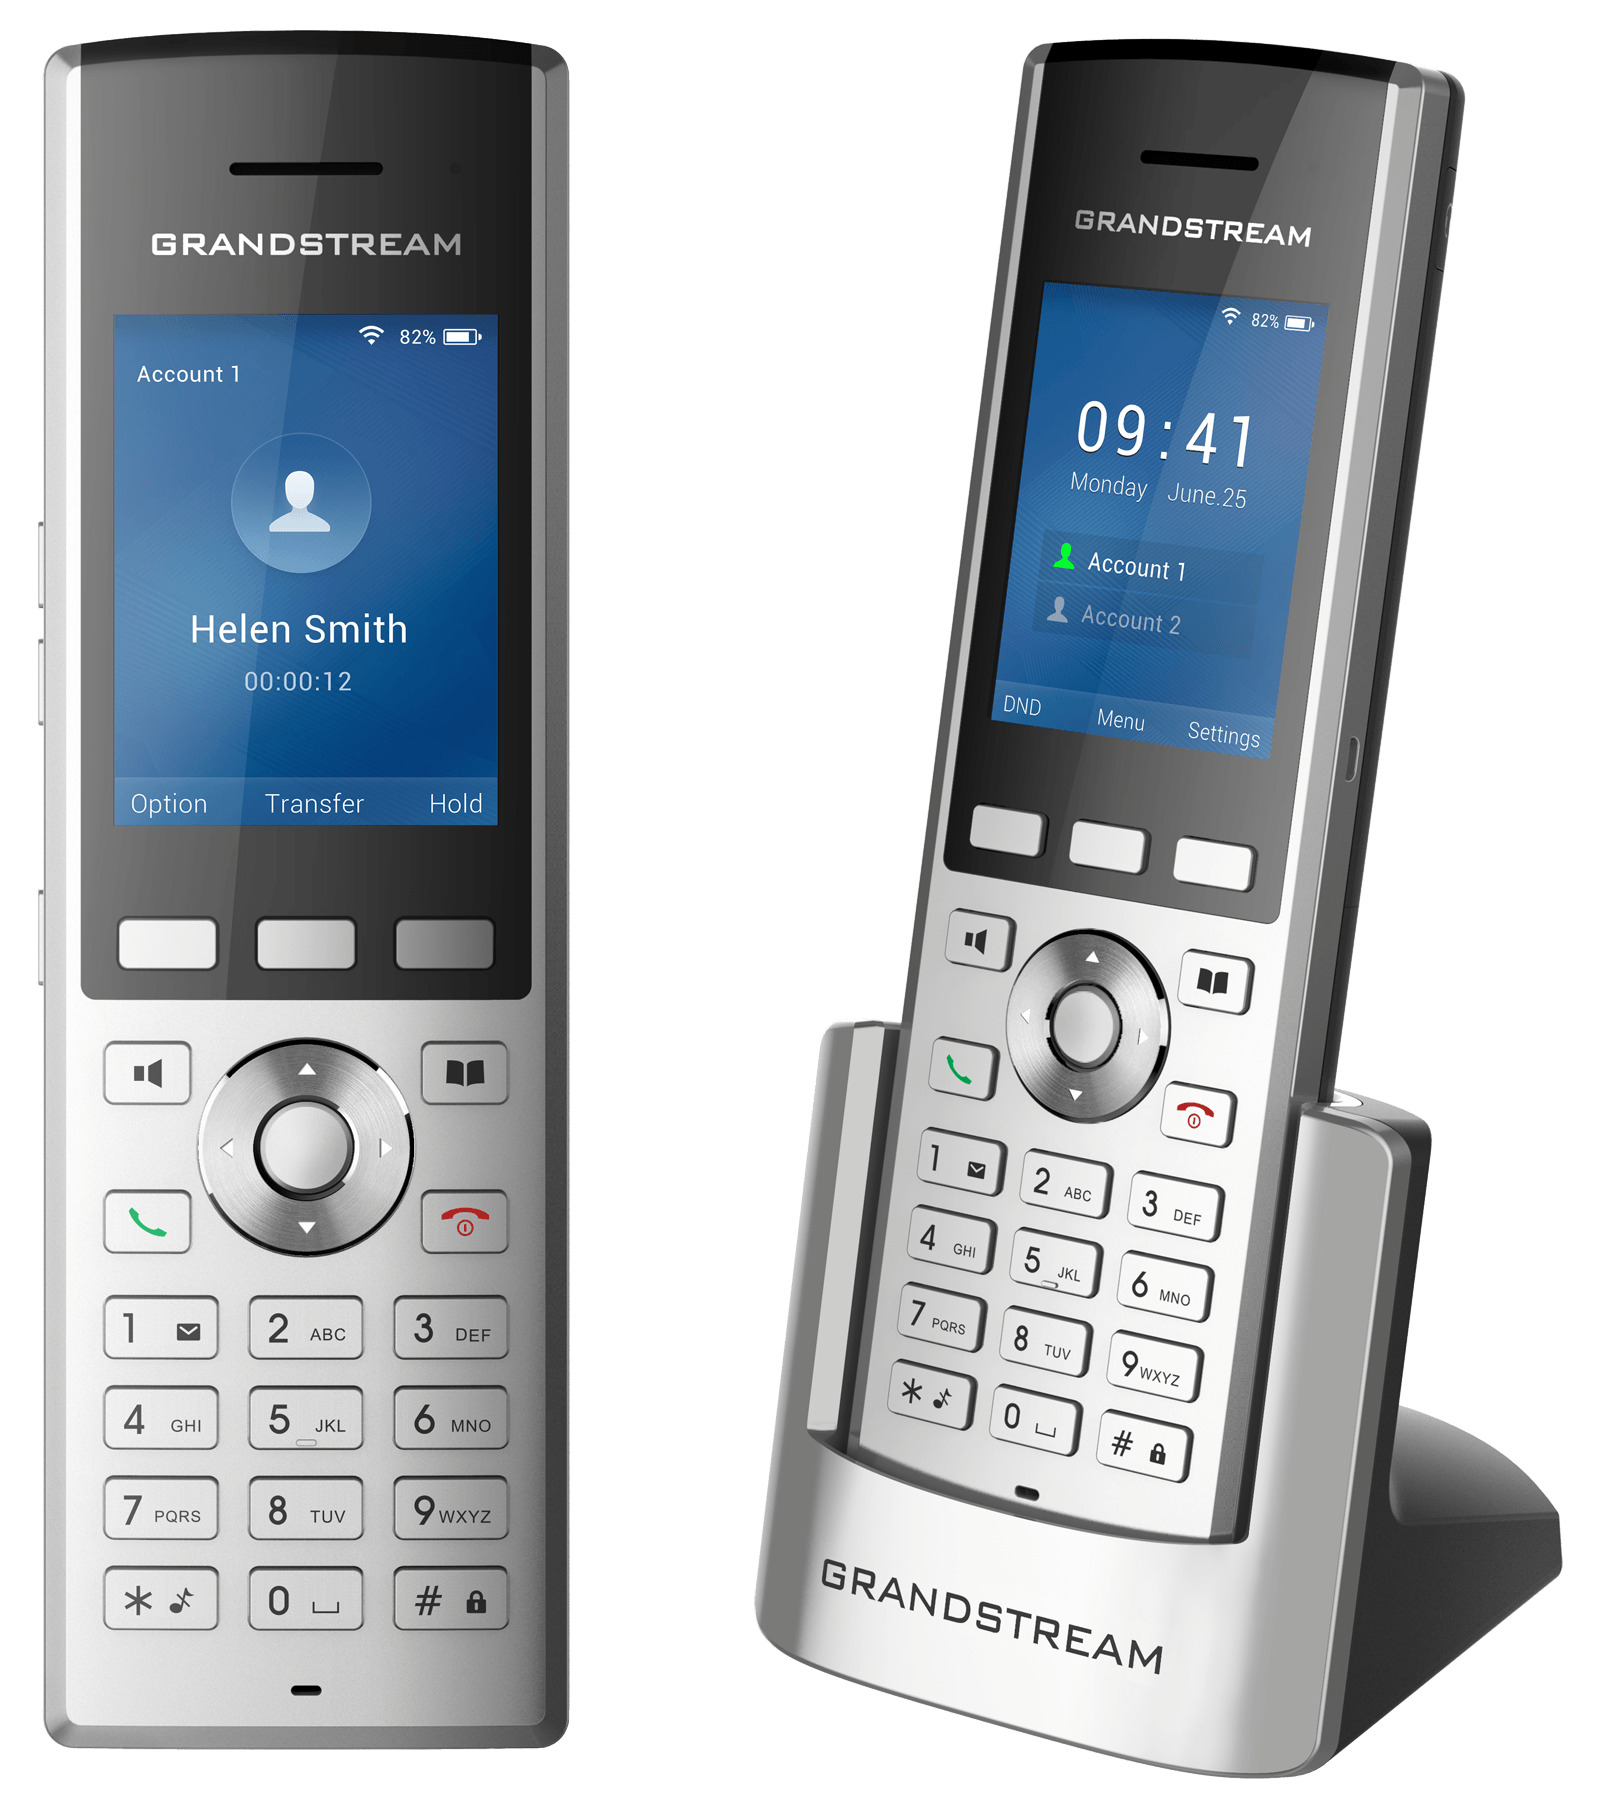 گوشی تلفن گرنداستریم WP820 یک گوشی در رده‌های کارشناسی، اپراتوری و مدیریتی